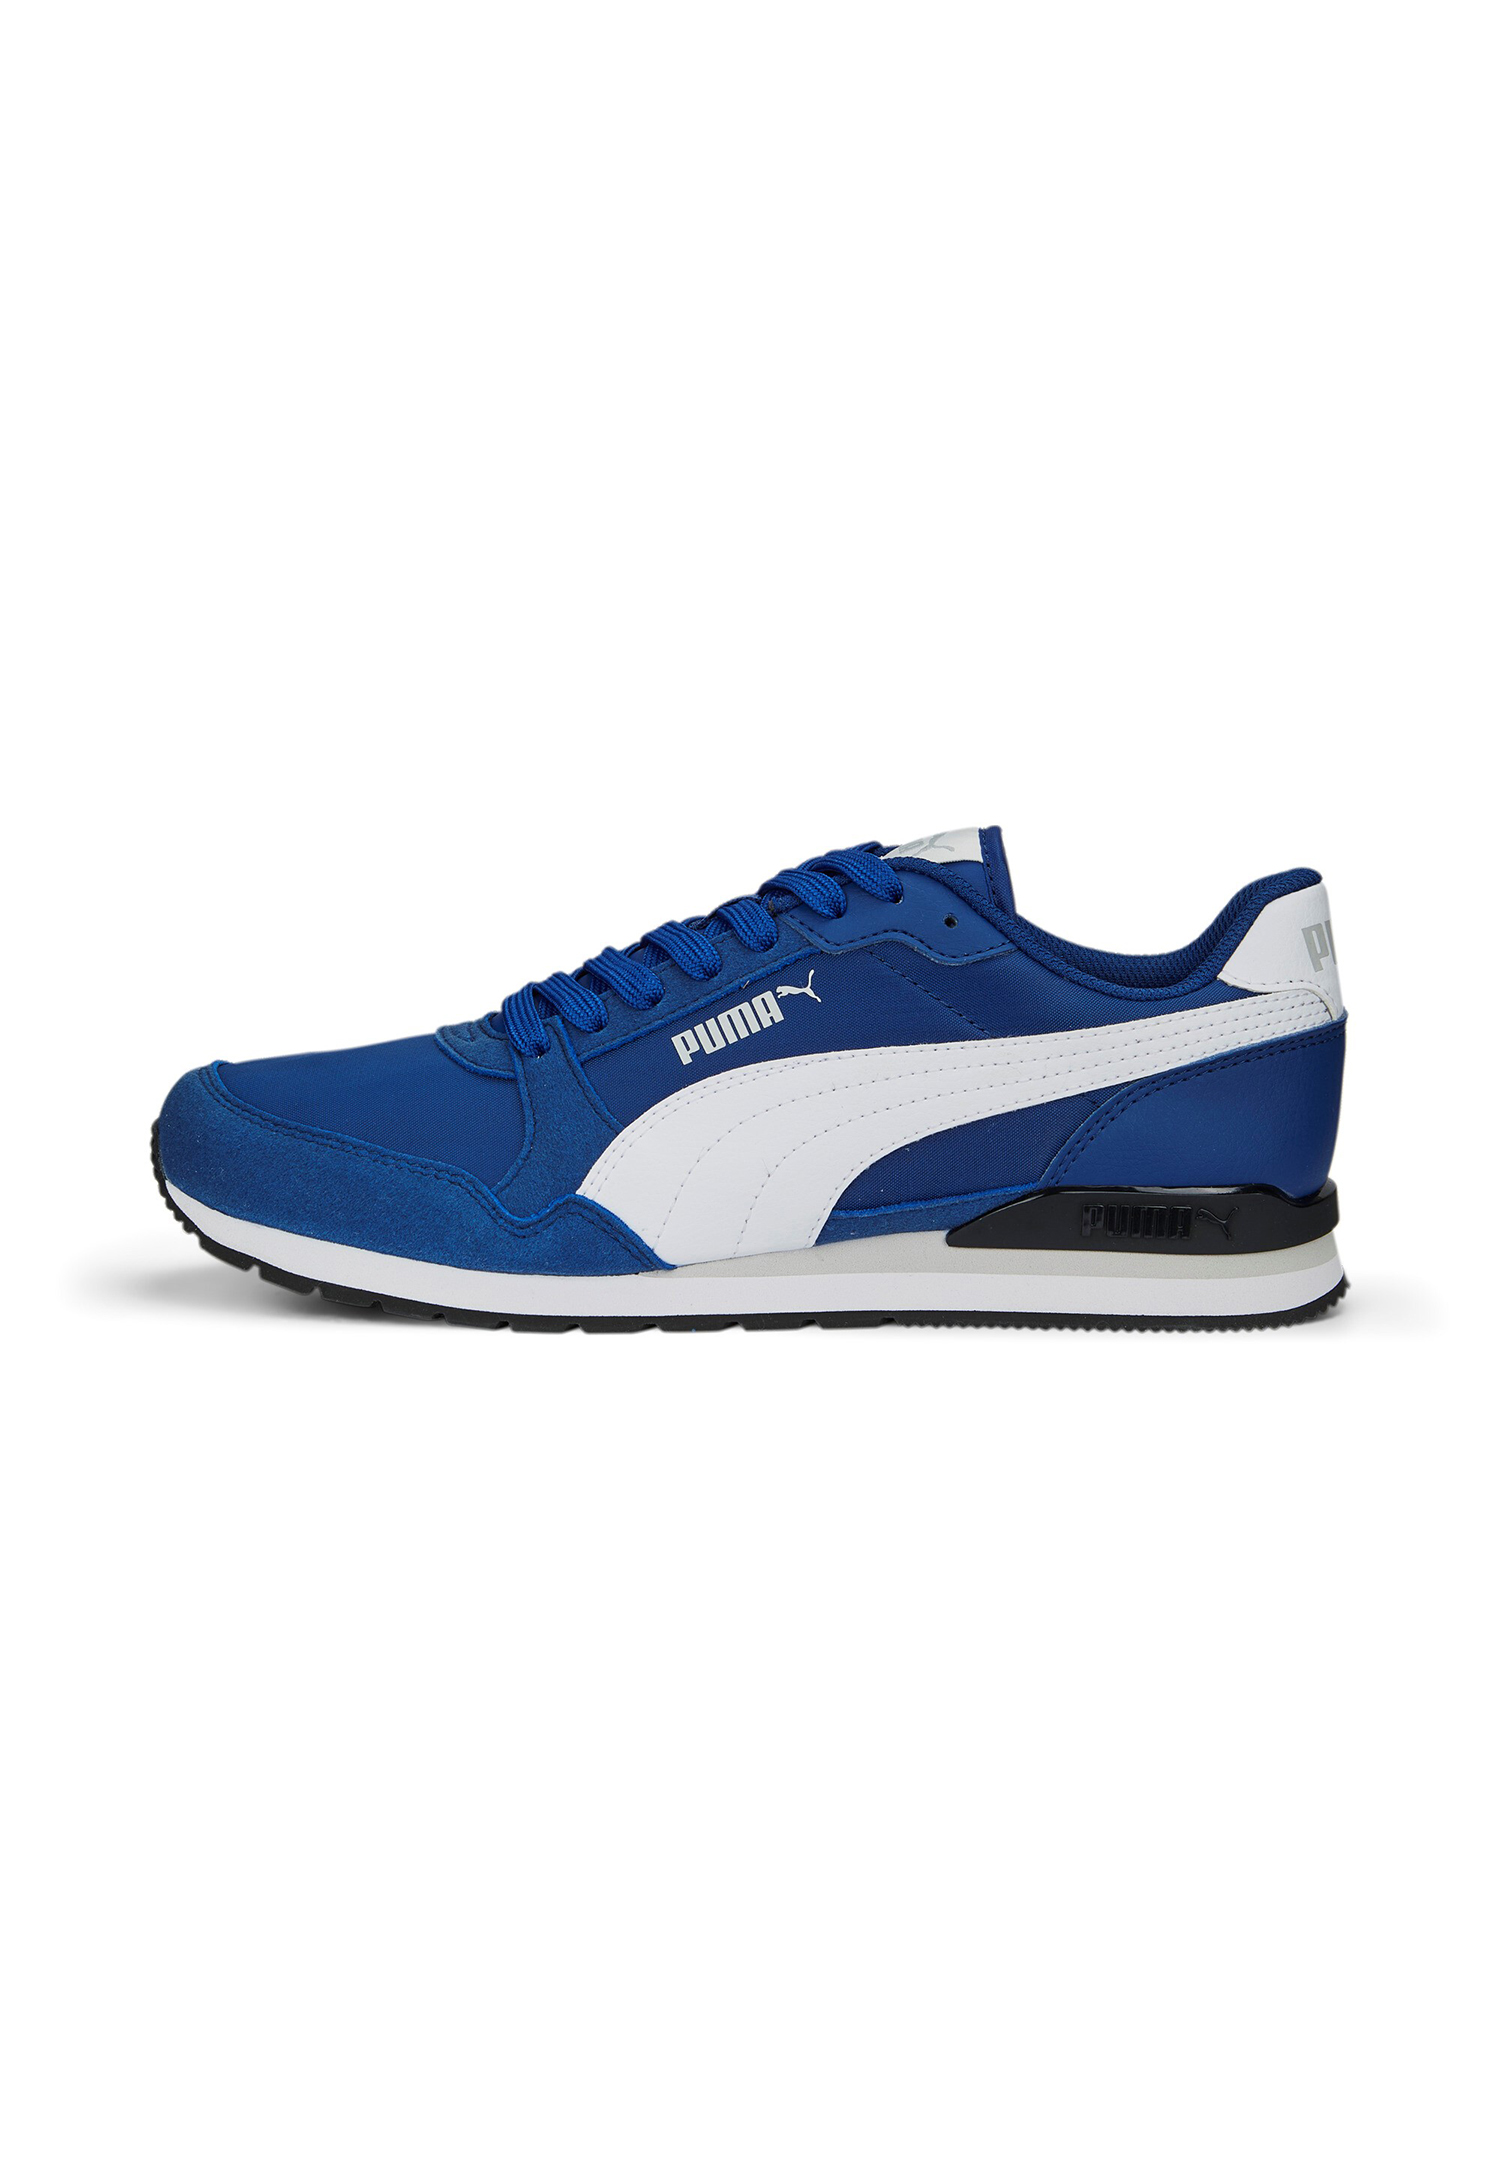 Puma ST Runner V3 NL Unisex Sneaker Turnschuhe 384857 blau